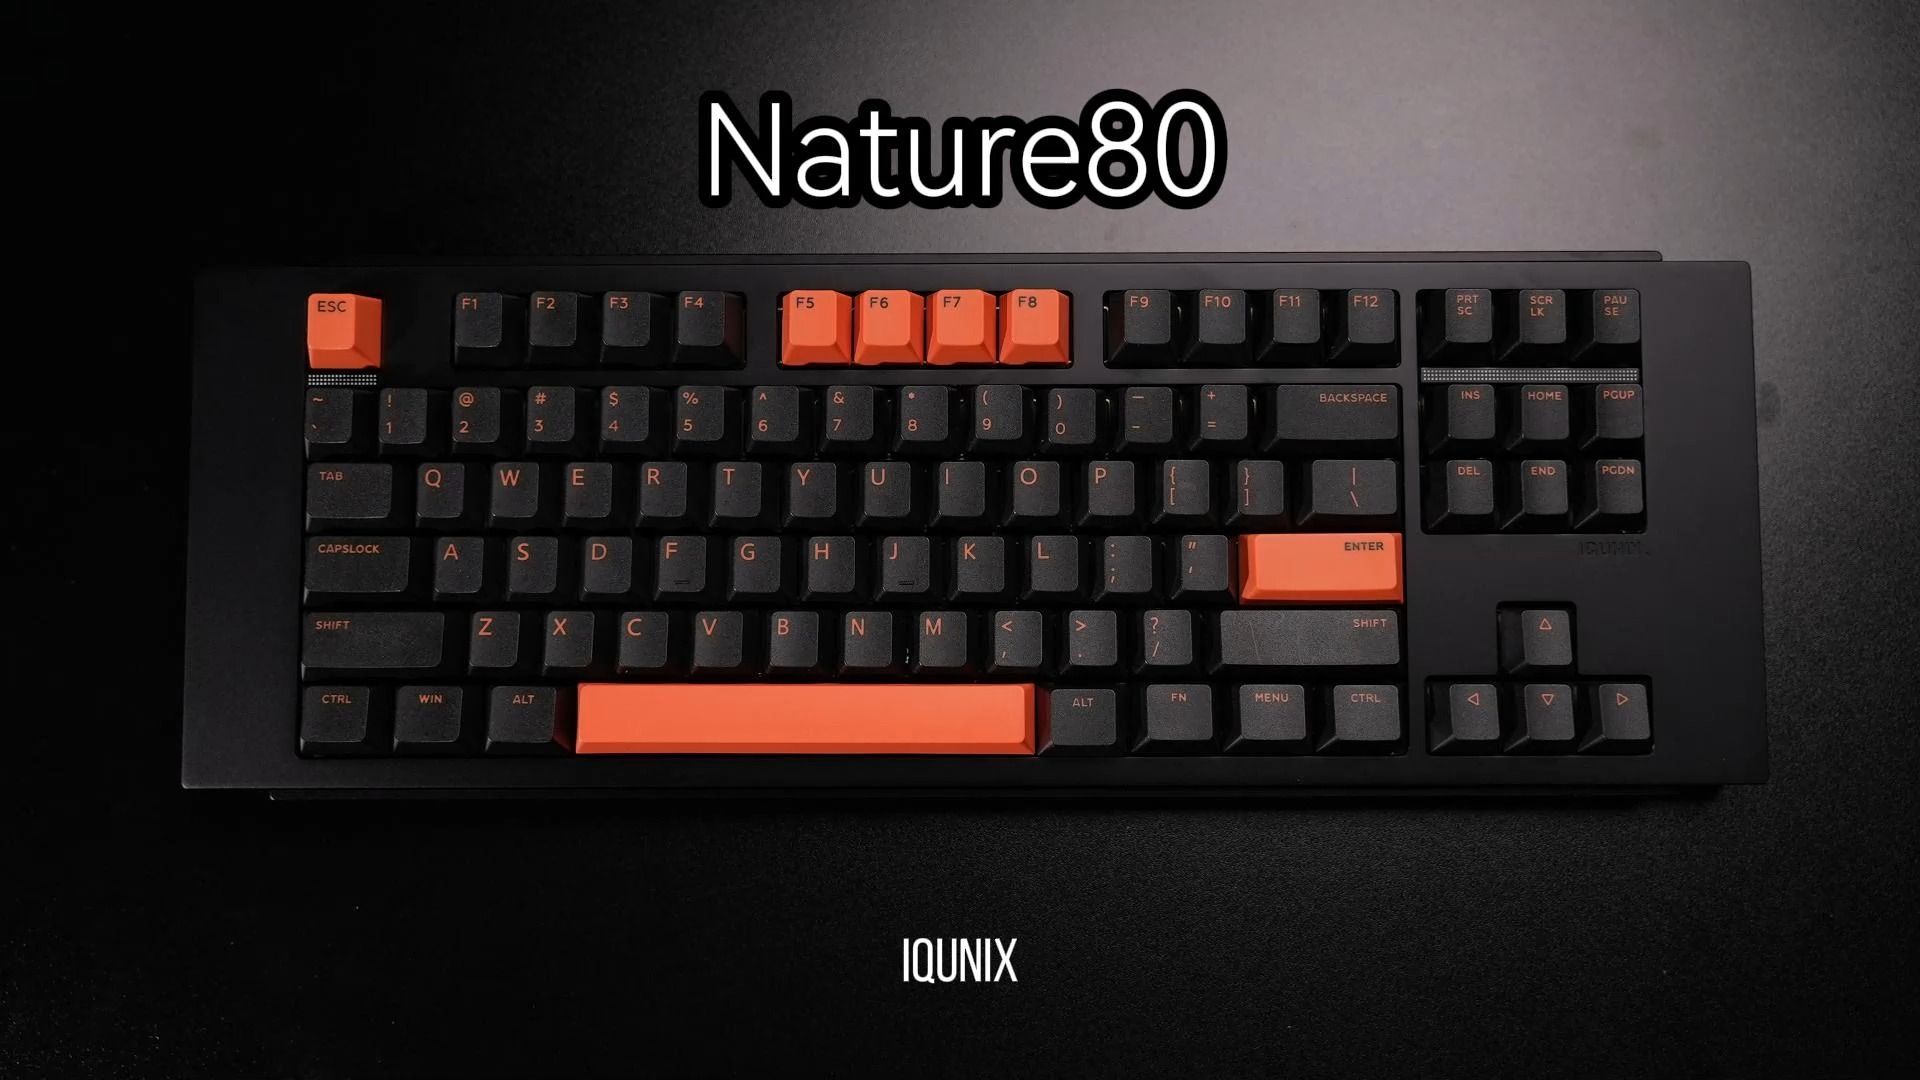 【@801】iQUNIX铝厂新作 Nature80 回归自然